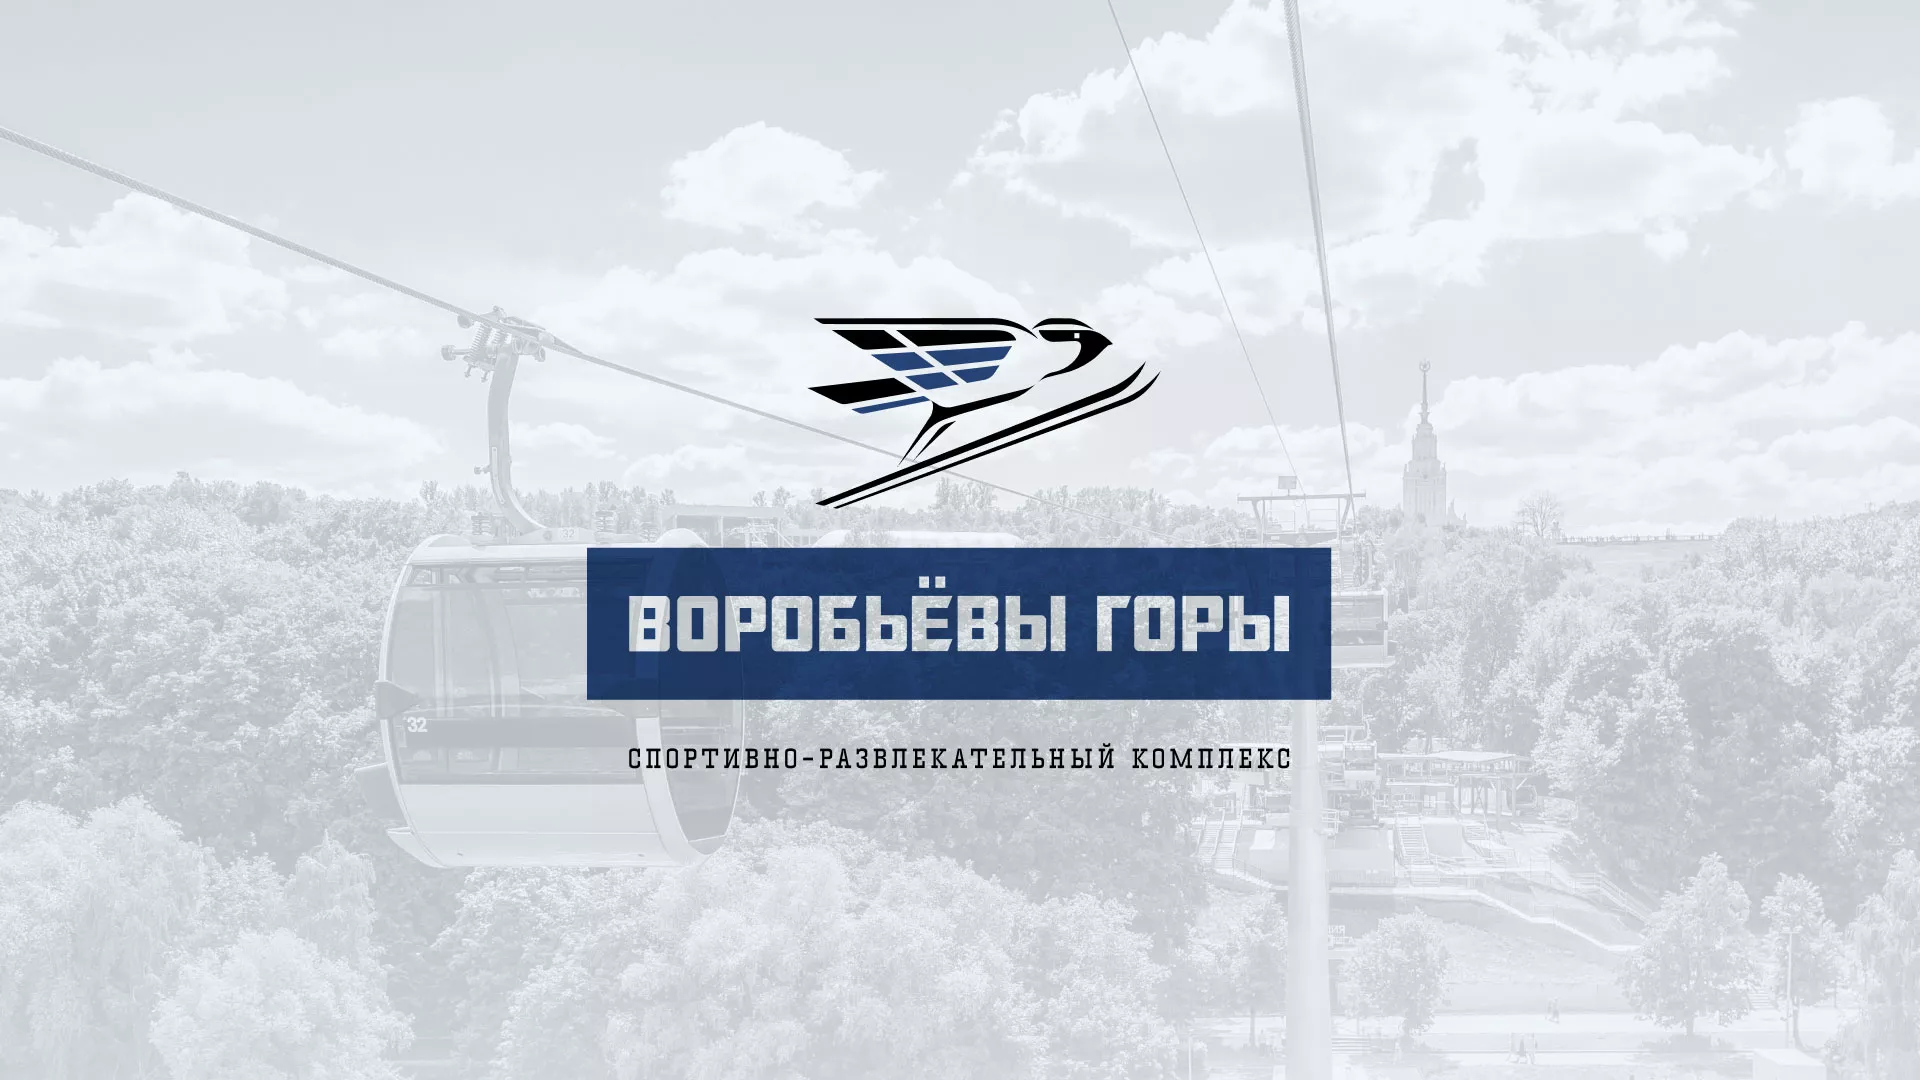 Разработка сайта в Острогожске для спортивно-развлекательного комплекса «Воробьёвы горы»